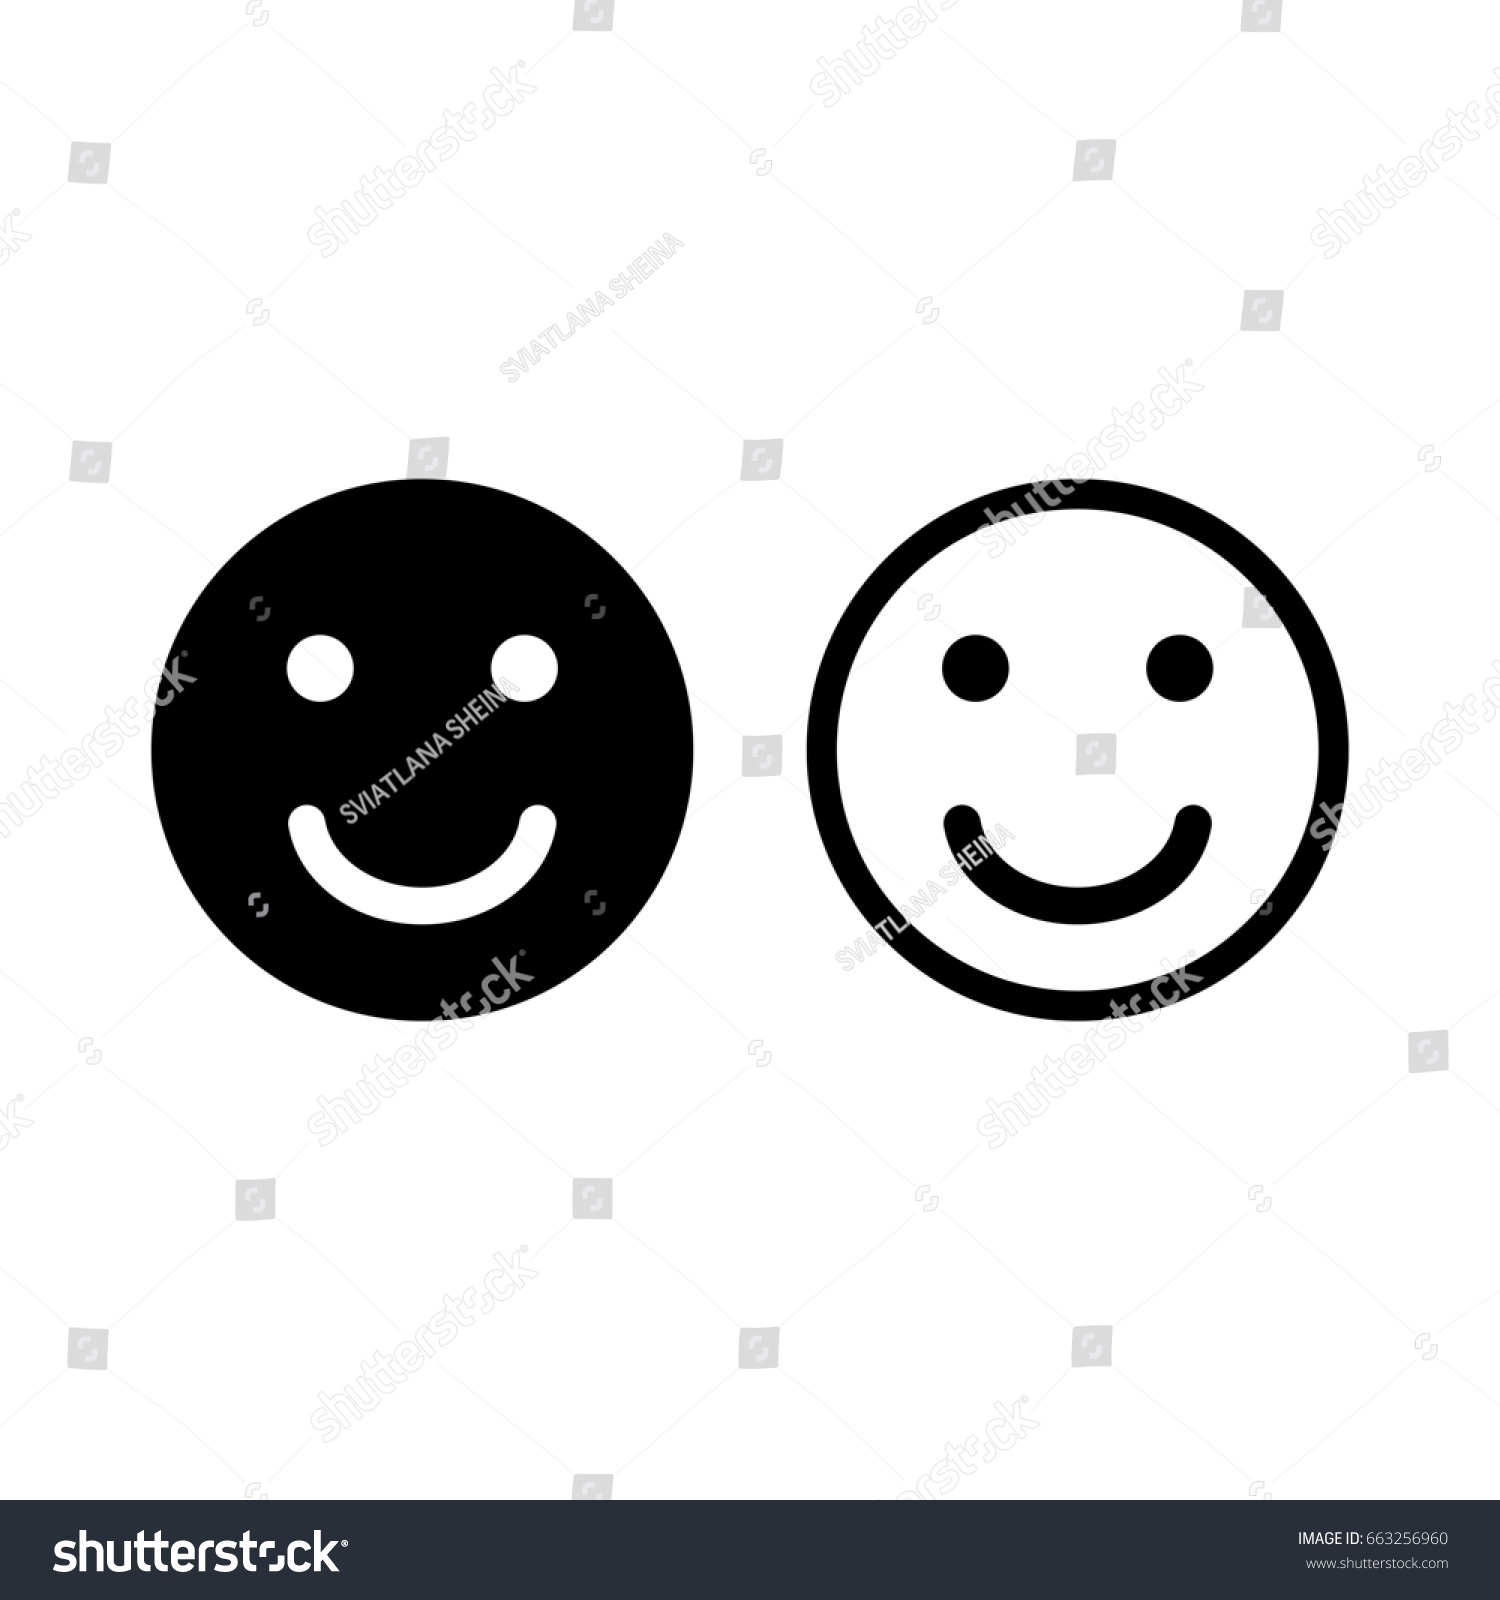 笑顔のアイコン ウェブサイトデザインに最適な顔の記号 のイラスト素材